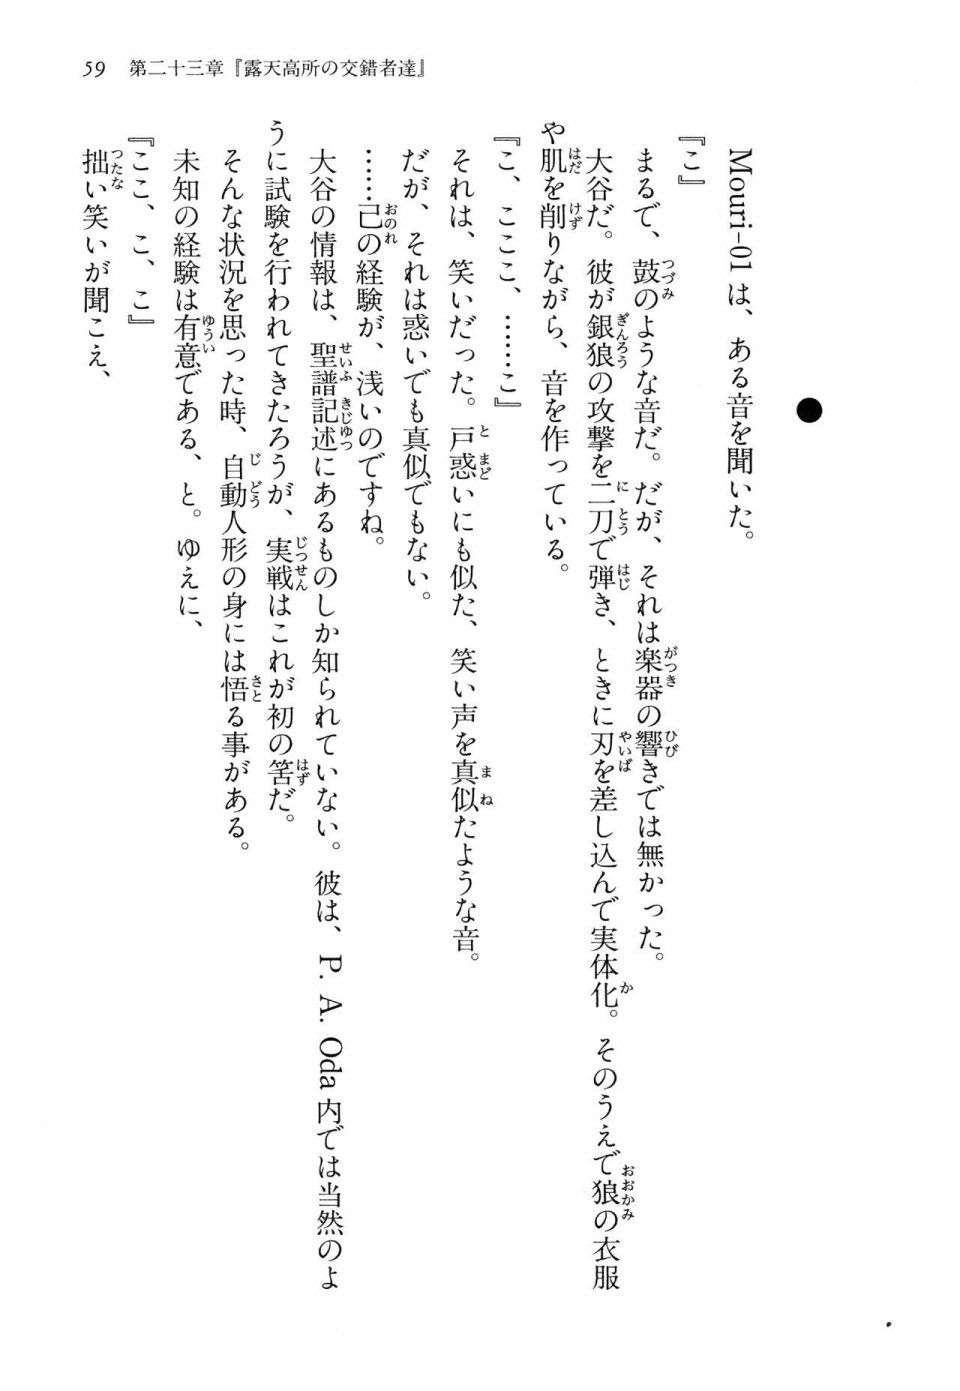 Kyoukai Senjou no Horizon LN Vol 14(6B) - Photo #59